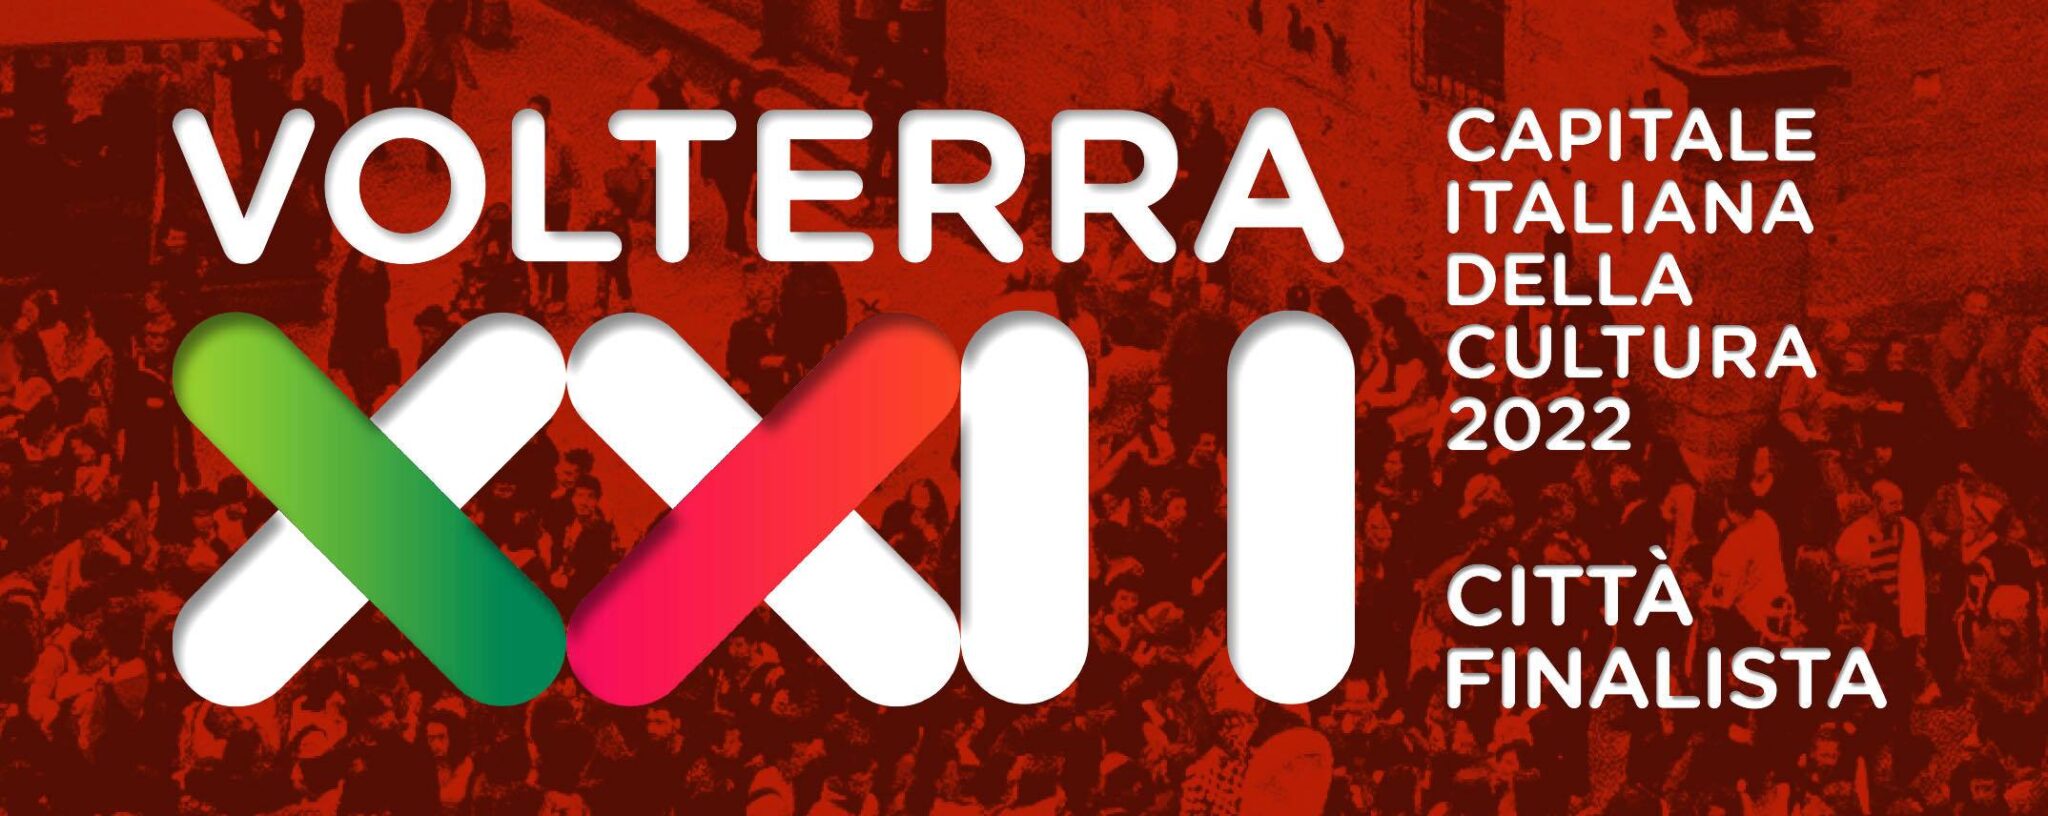 Volterra candidata capitale italiana della Cultura 2022